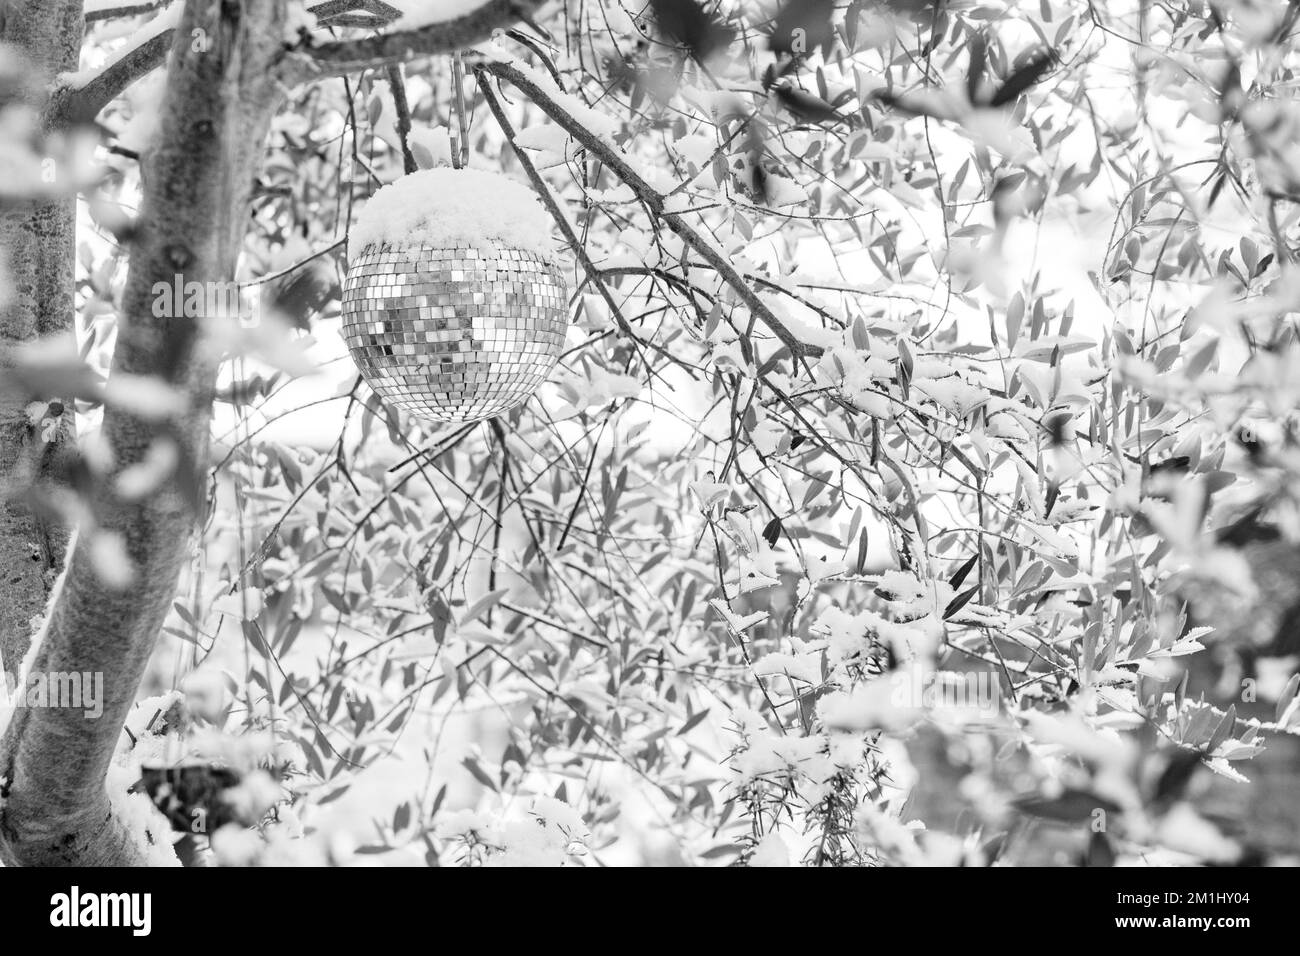 Gros plan d'une boule scintillante dans un olivier recouvert de neige pendant un joli hiver. Banque D'Images